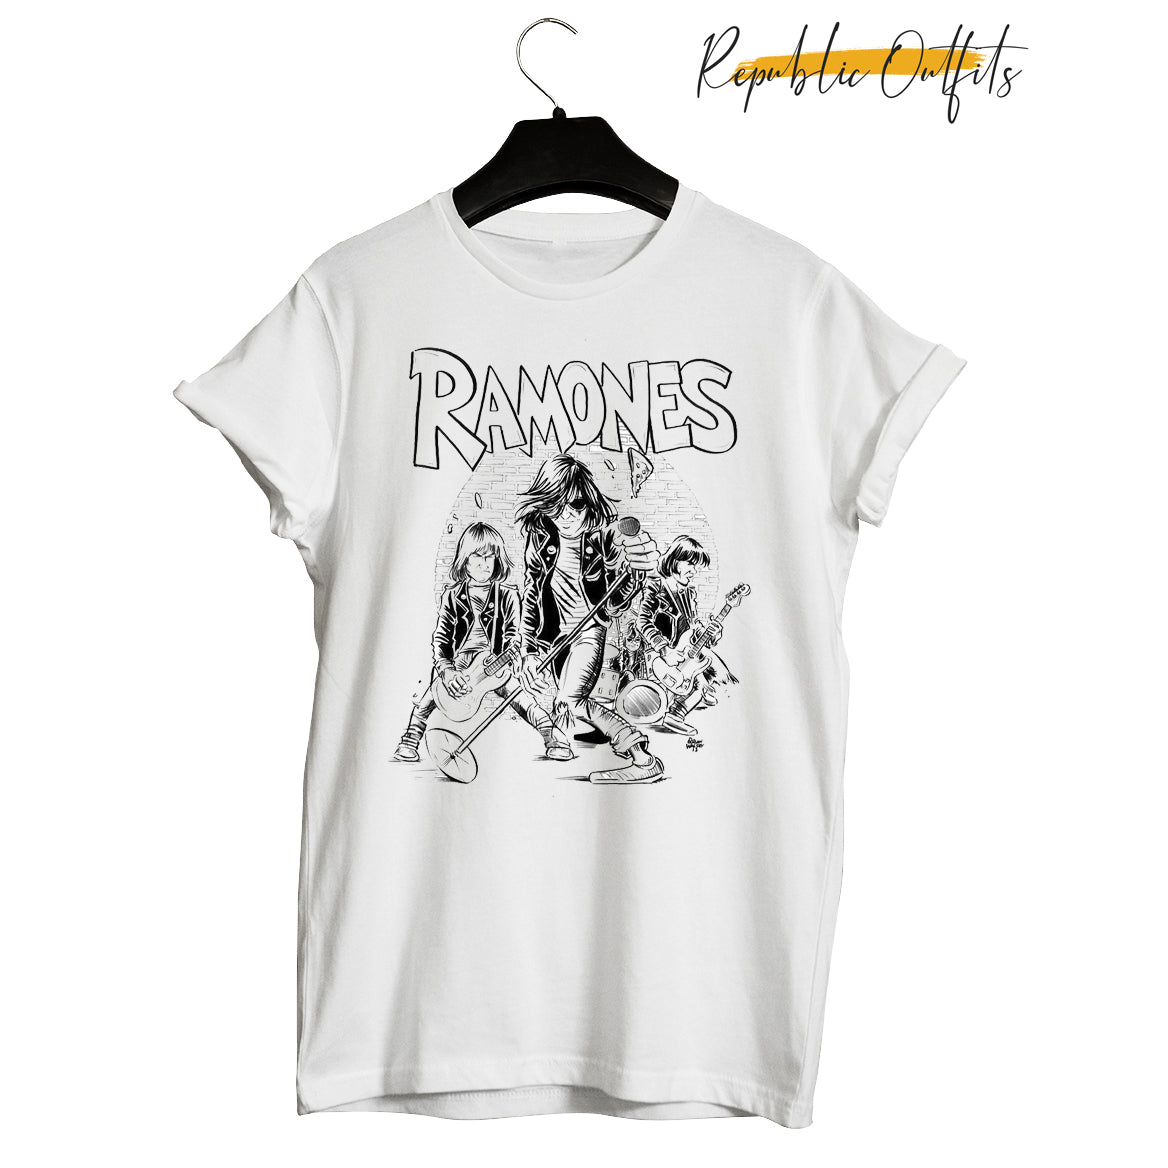 Ramones Tee